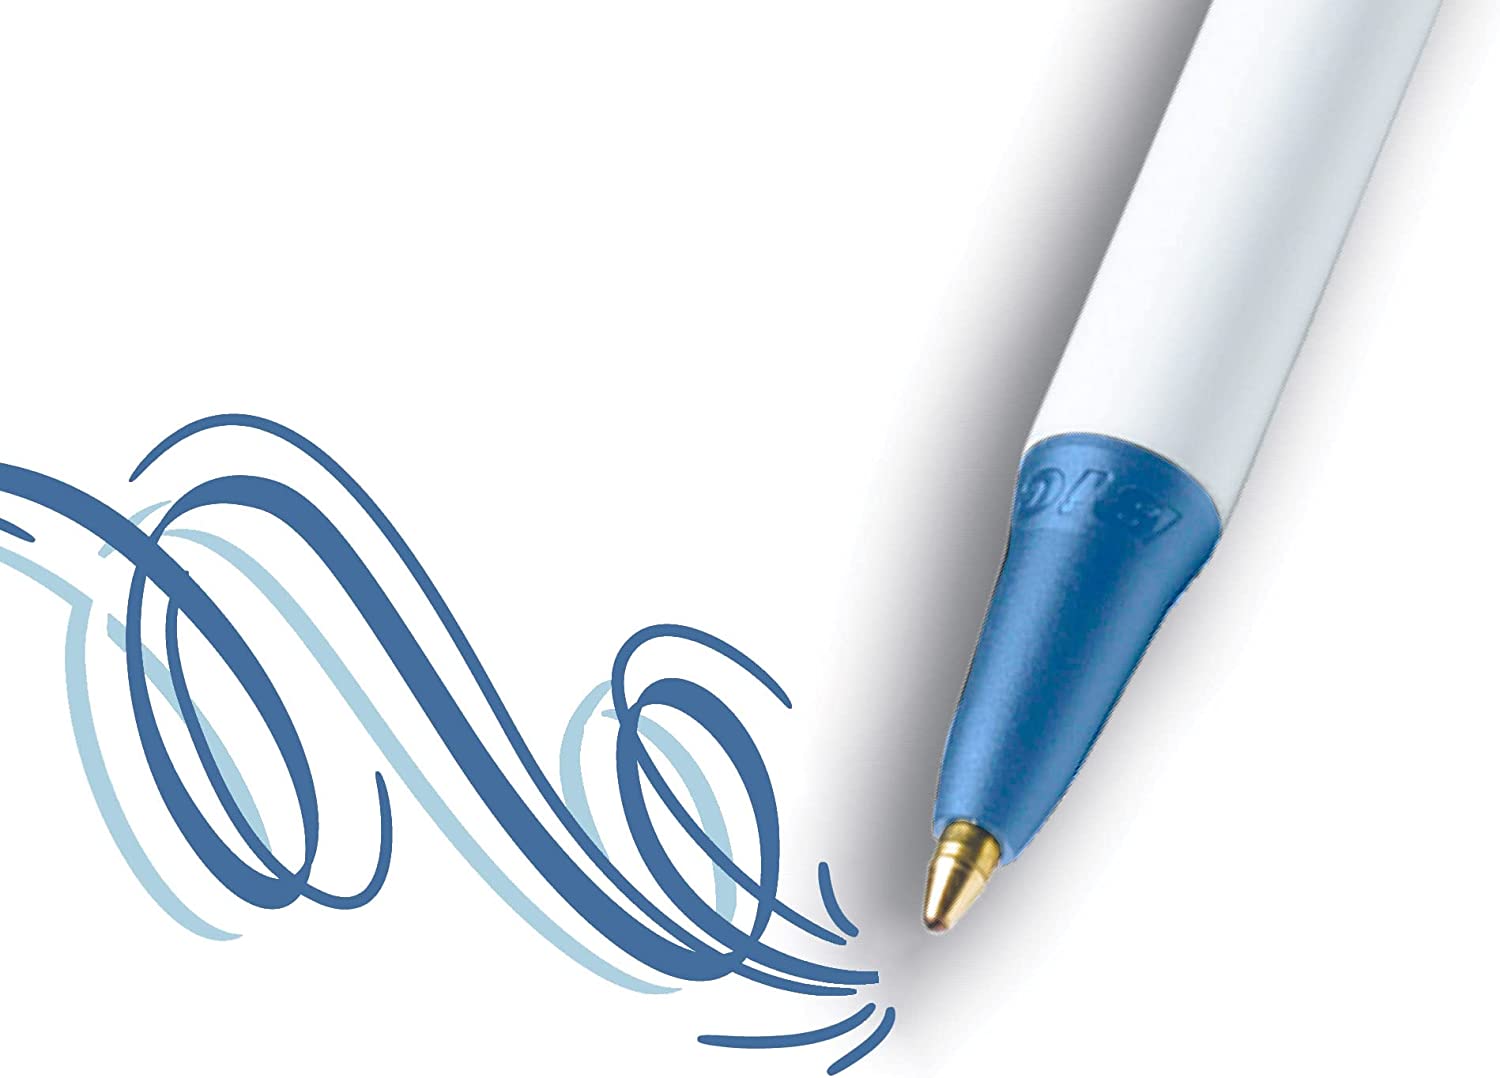 Hộp 12 Bút bi màu xanh gọn nhẹ, ngòi êm Bic Clic Stic Retractable Ball Pen, cỡ ngòi 1.0mm